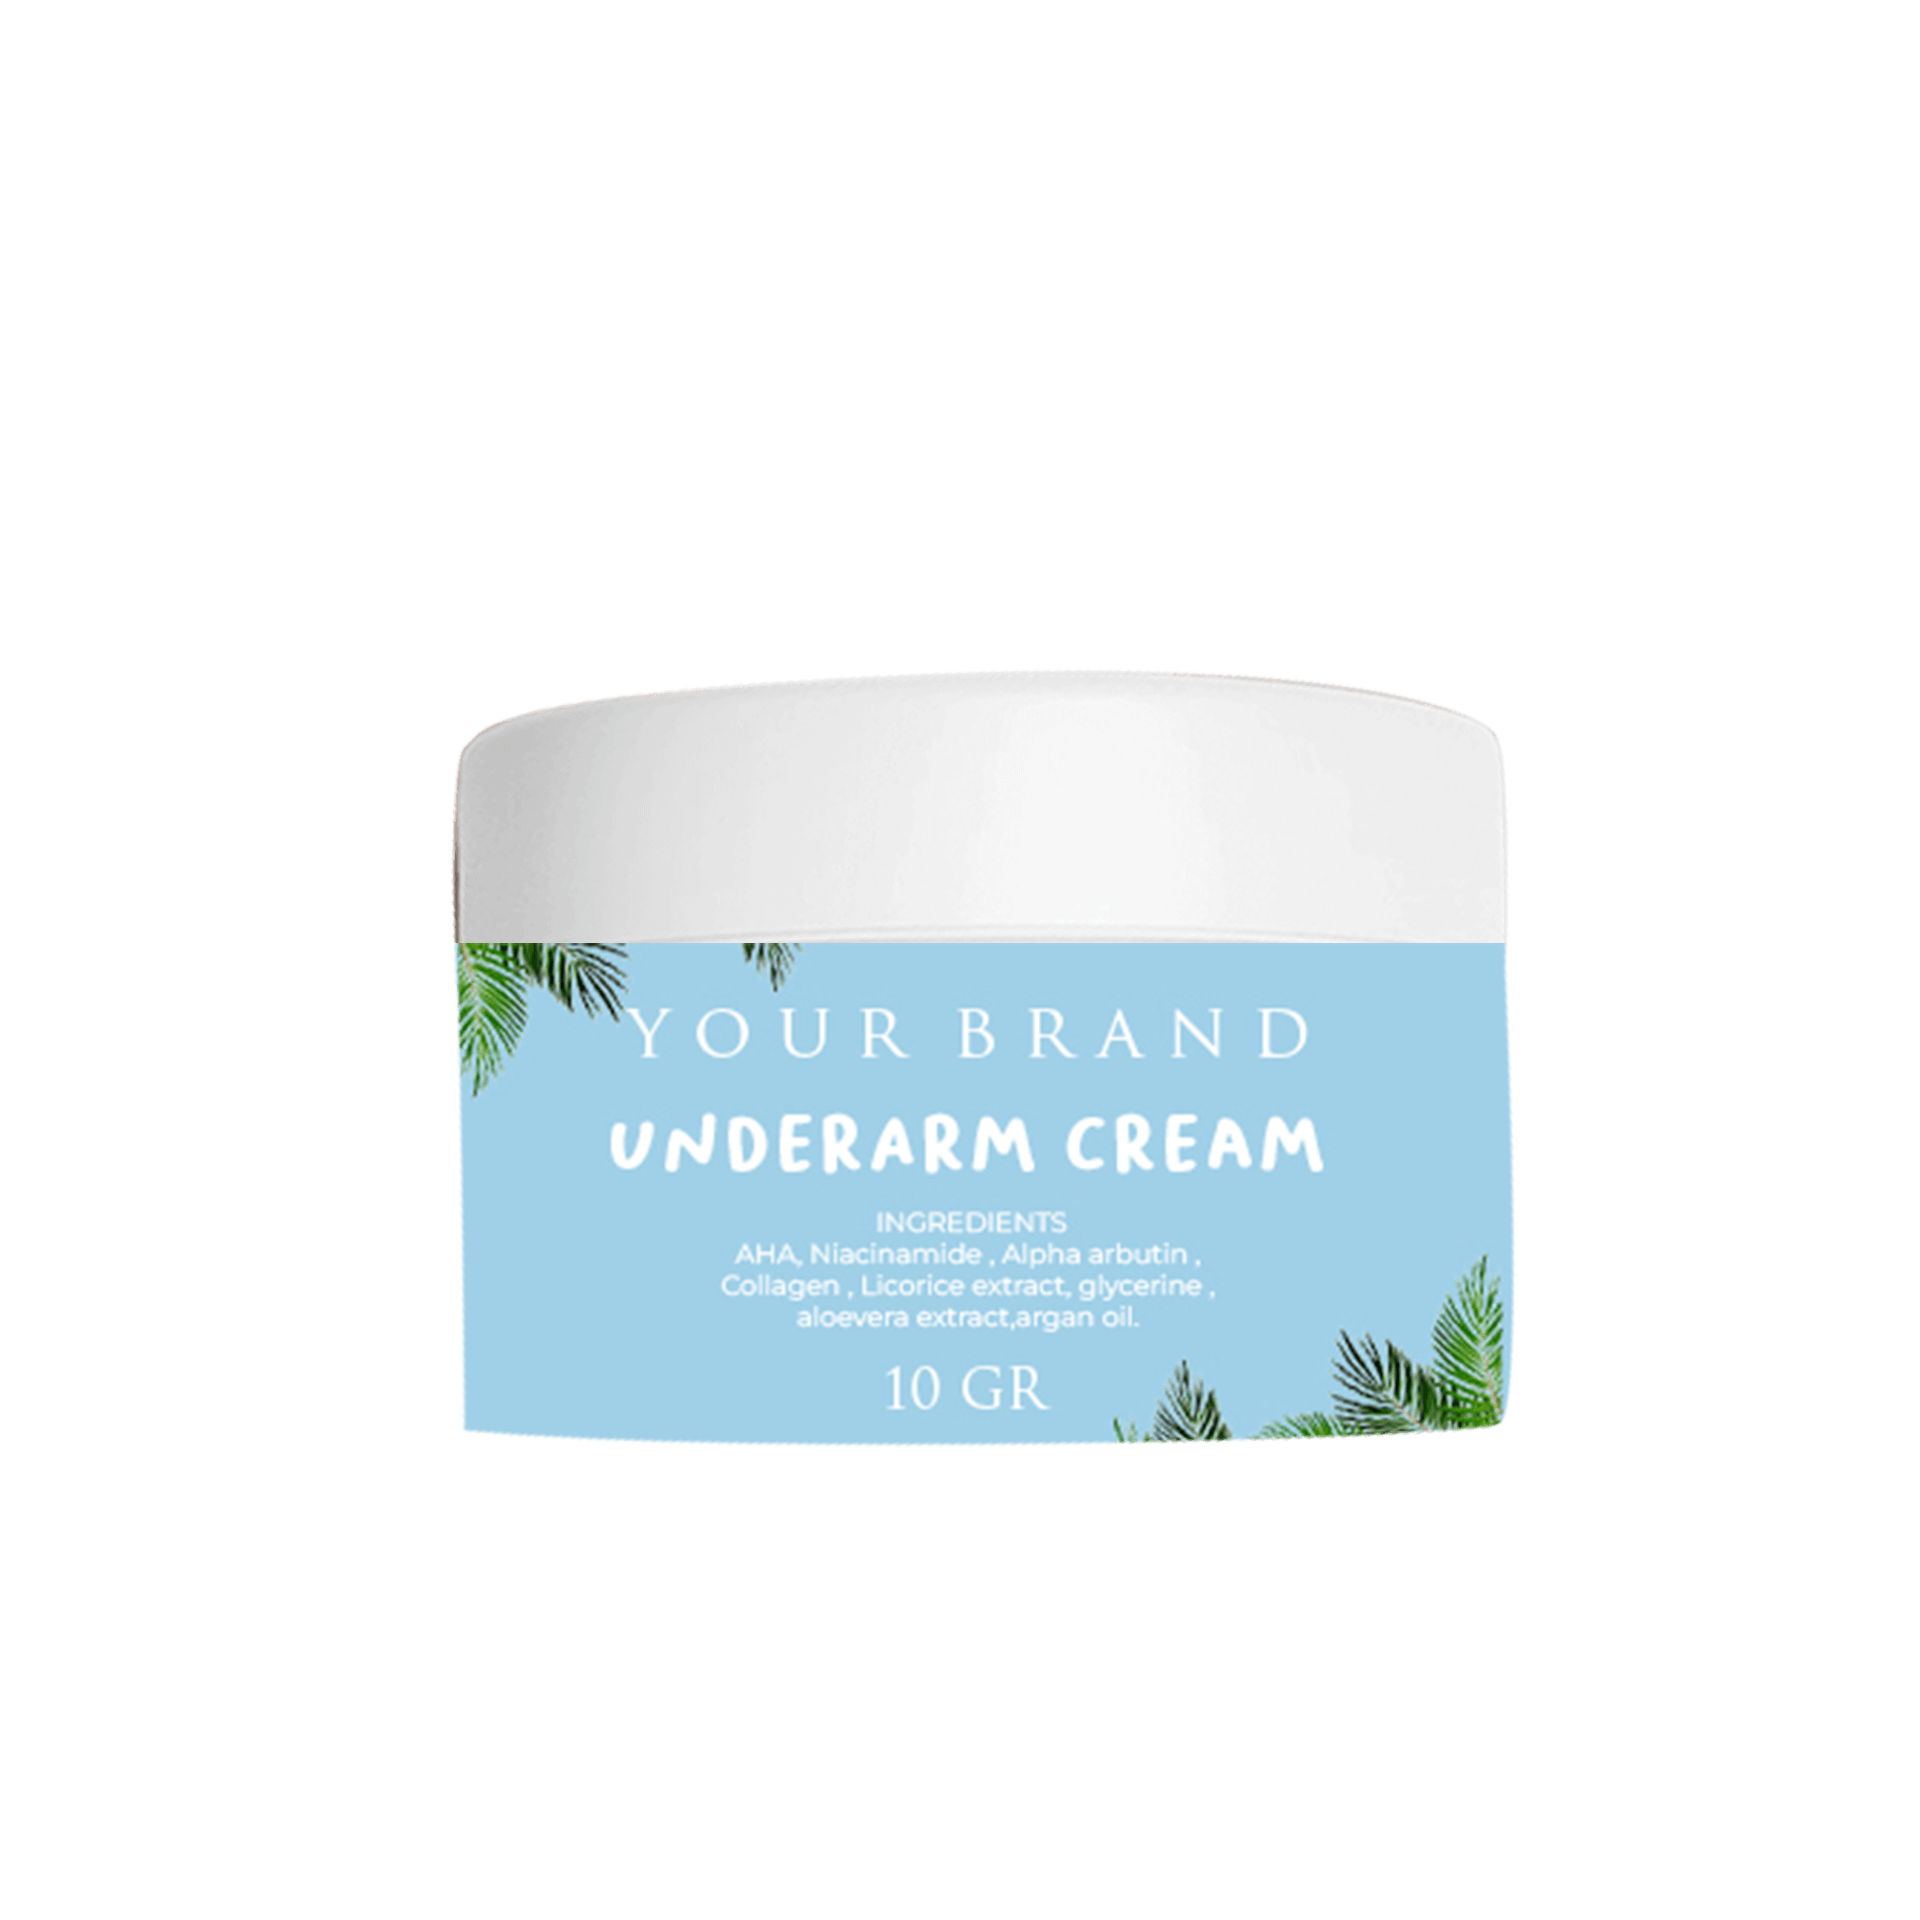 Underarm Cream